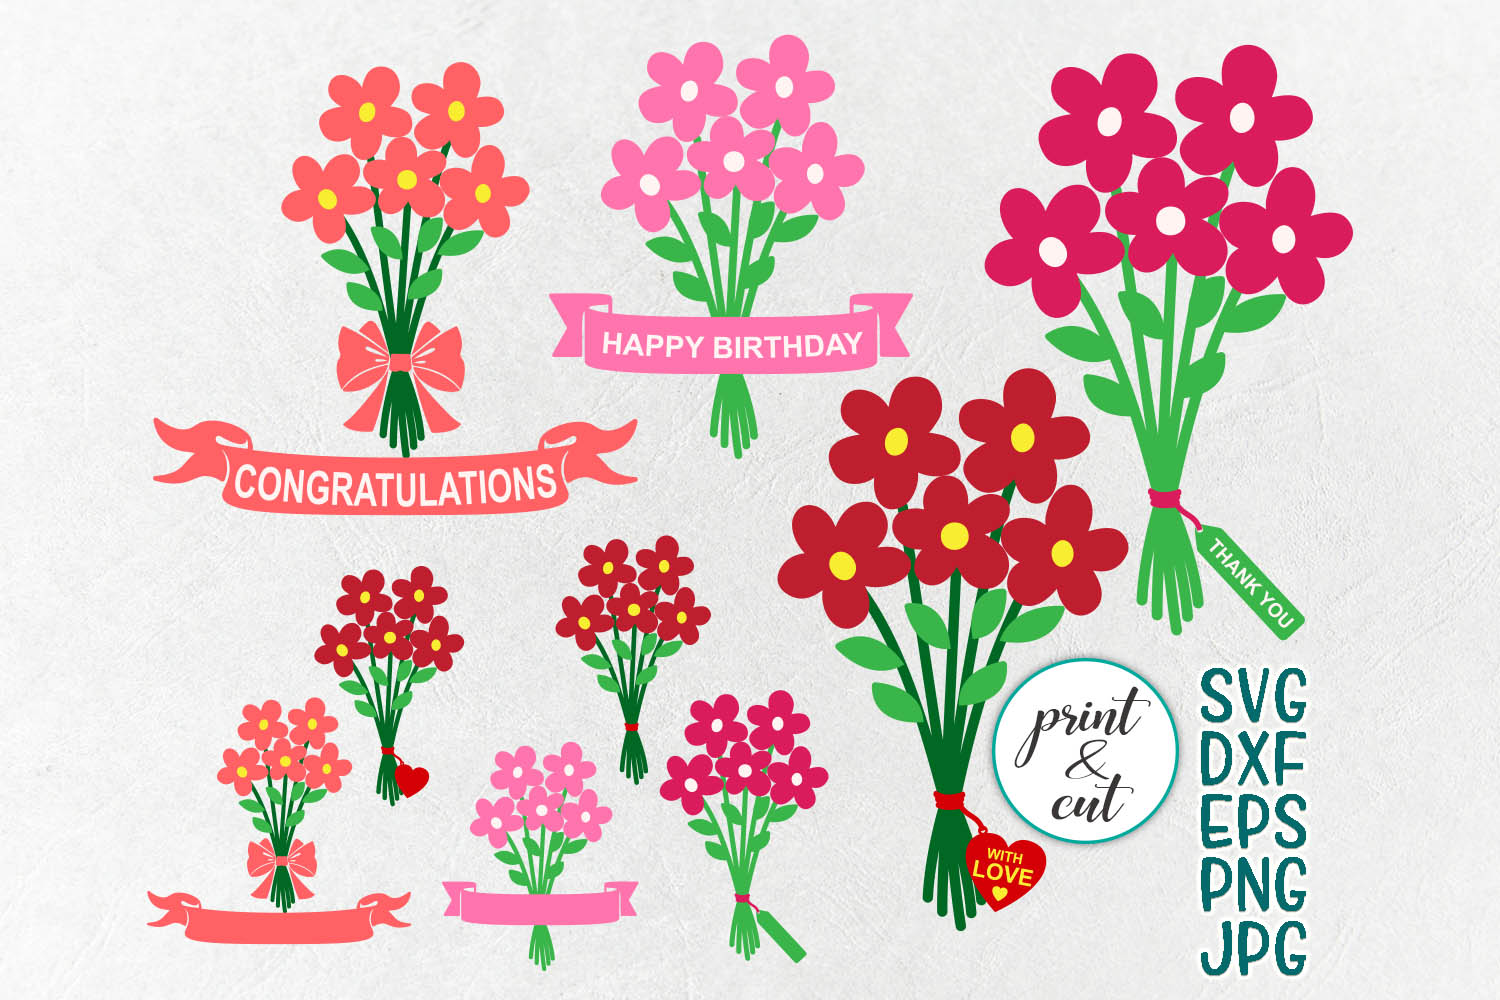 Congratulations flowers bouquet svg dxf bundle for ...